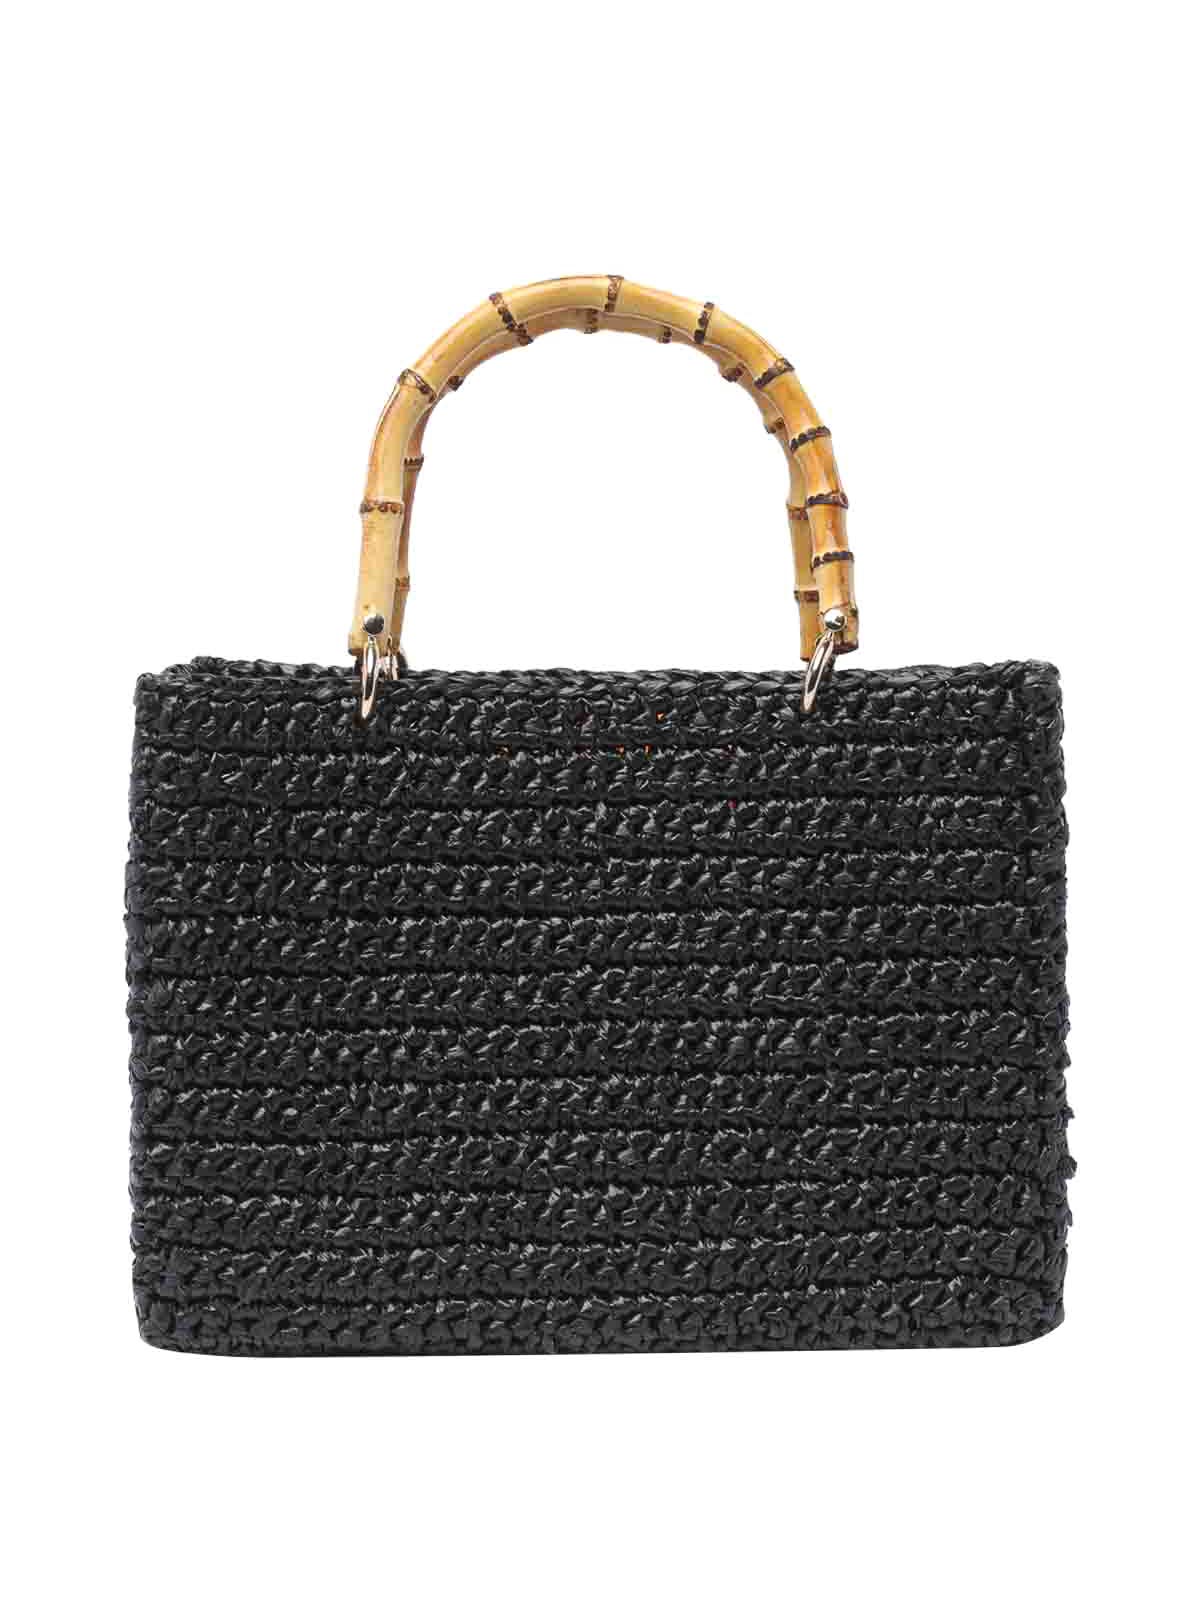 Chica Venere Handbag In Black